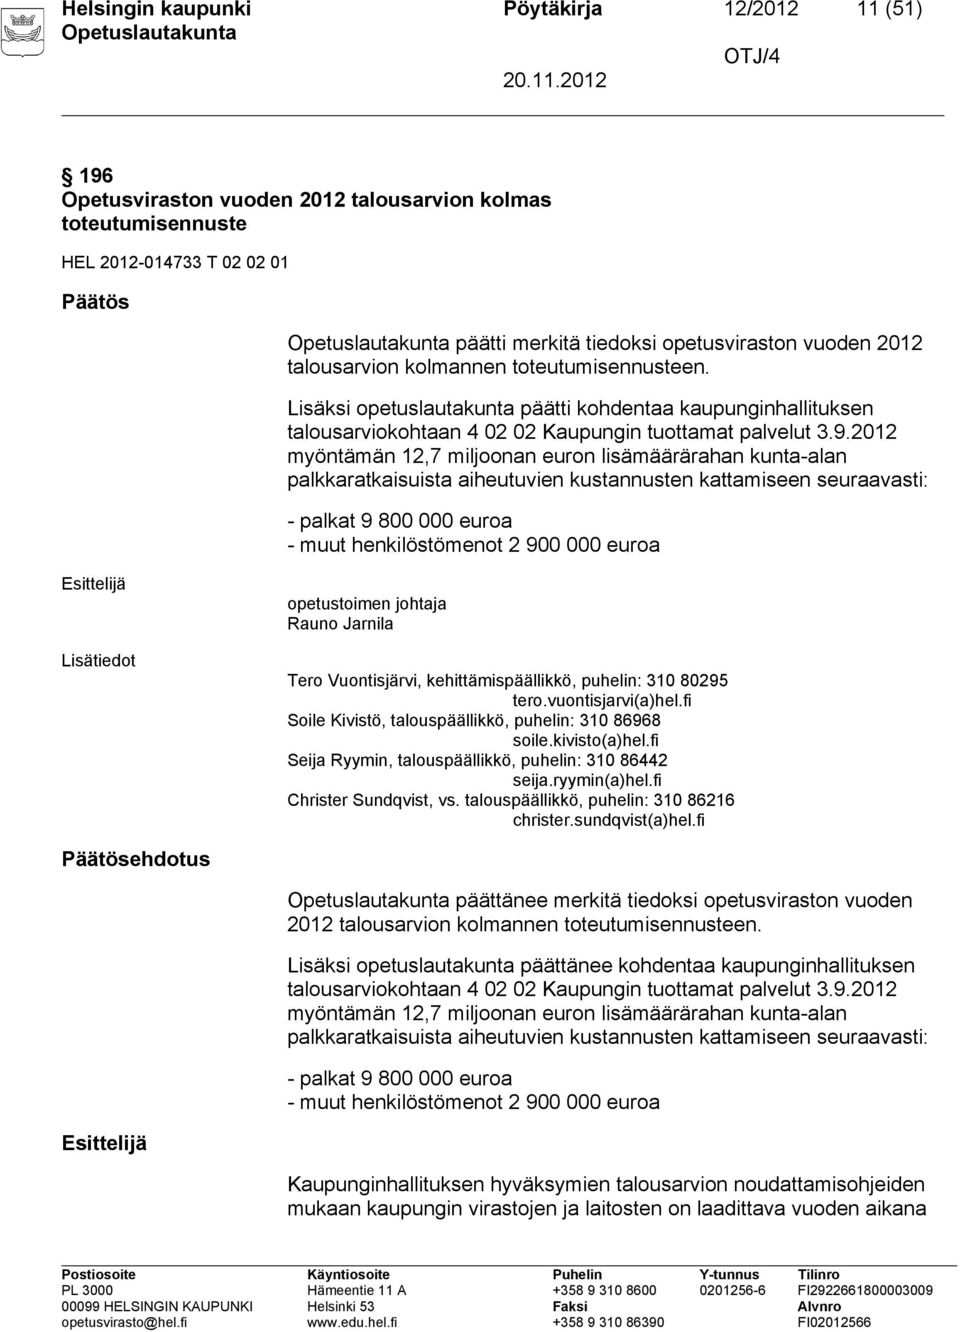 2012 myöntämän 12,7 miljoonan euron lisämäärärahan kunta-alan palkkaratkaisuista aiheutuvien kustannusten kattamiseen seuraavasti: - palkat 9 800 000 euroa - muut henkilöstömenot 2 900 000 euroa